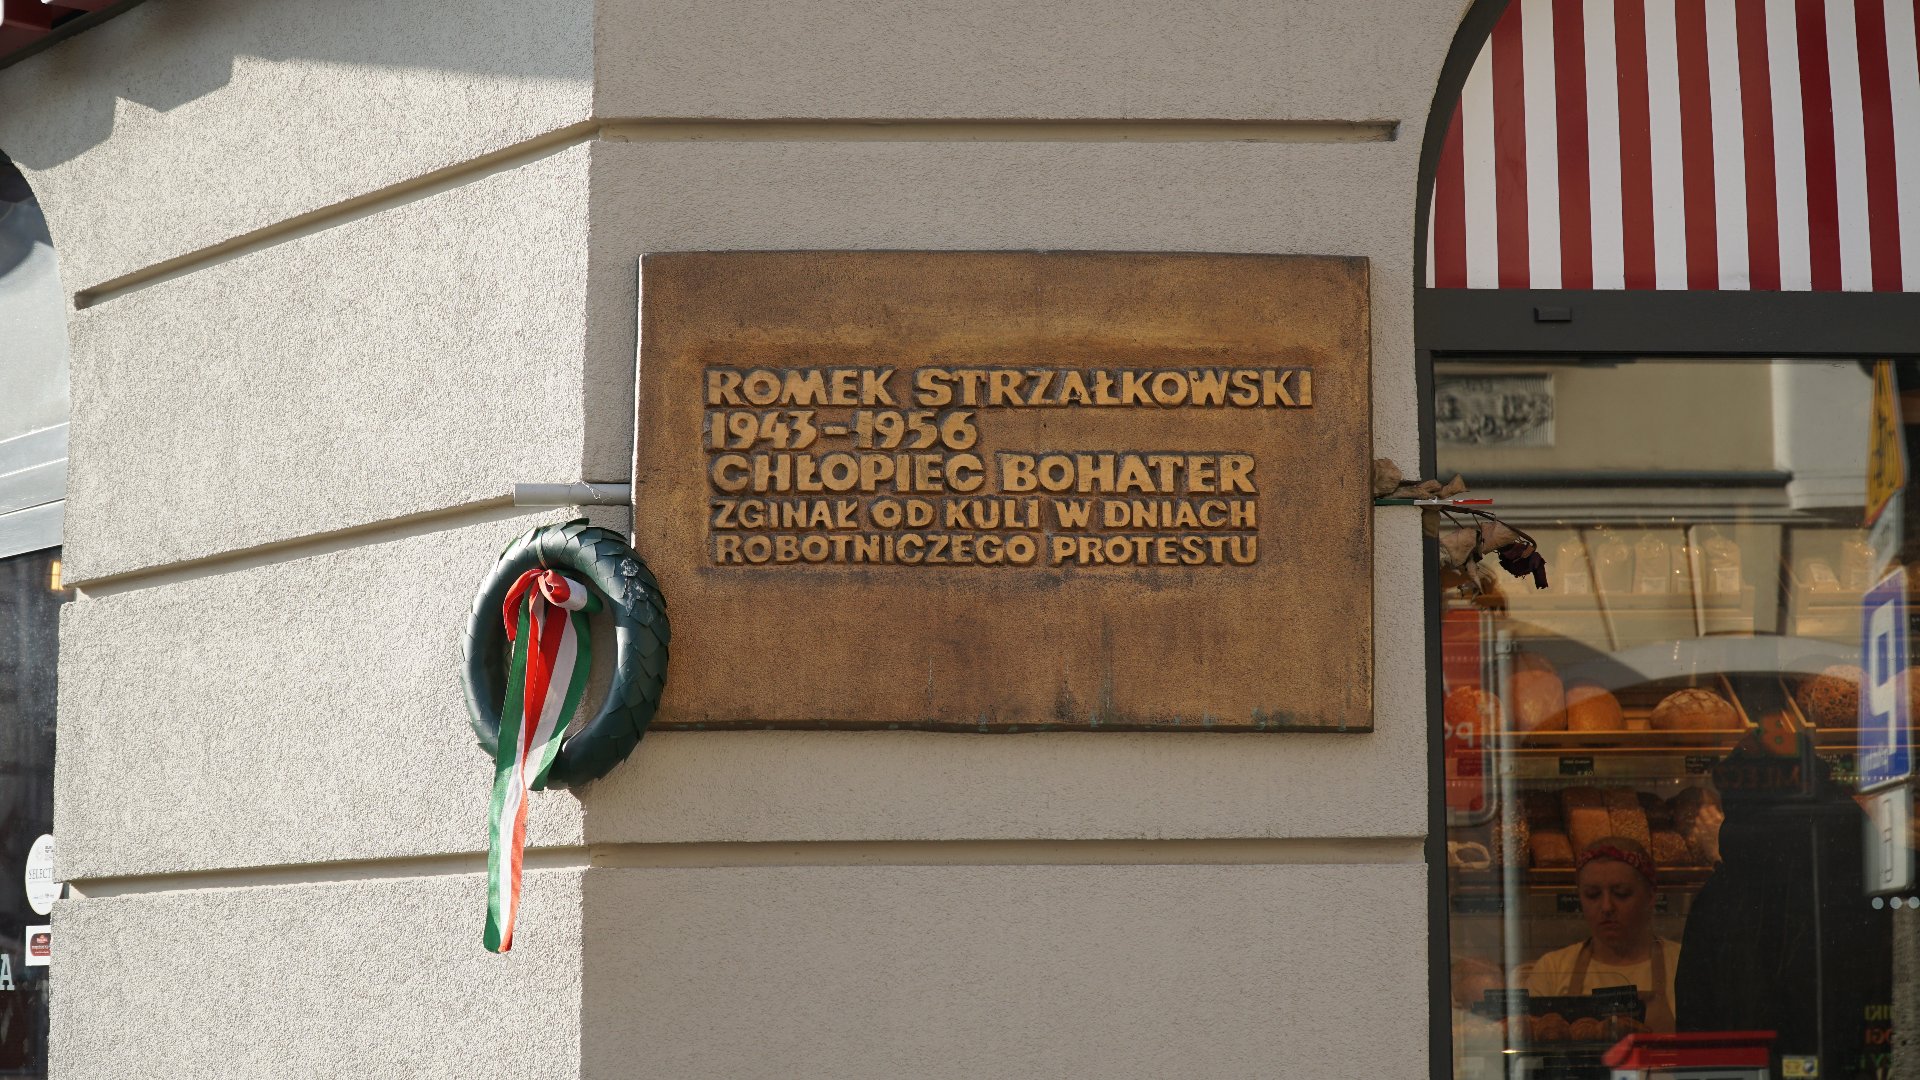 Miedziana tablica powieszona na rogu budynku. Tablica jest prostokątną płytą, z napisem: "Romek Strzałkowski 1943-1956. Chłopiec bohater. Zginął od kuli w dniach robotniczego protestu".